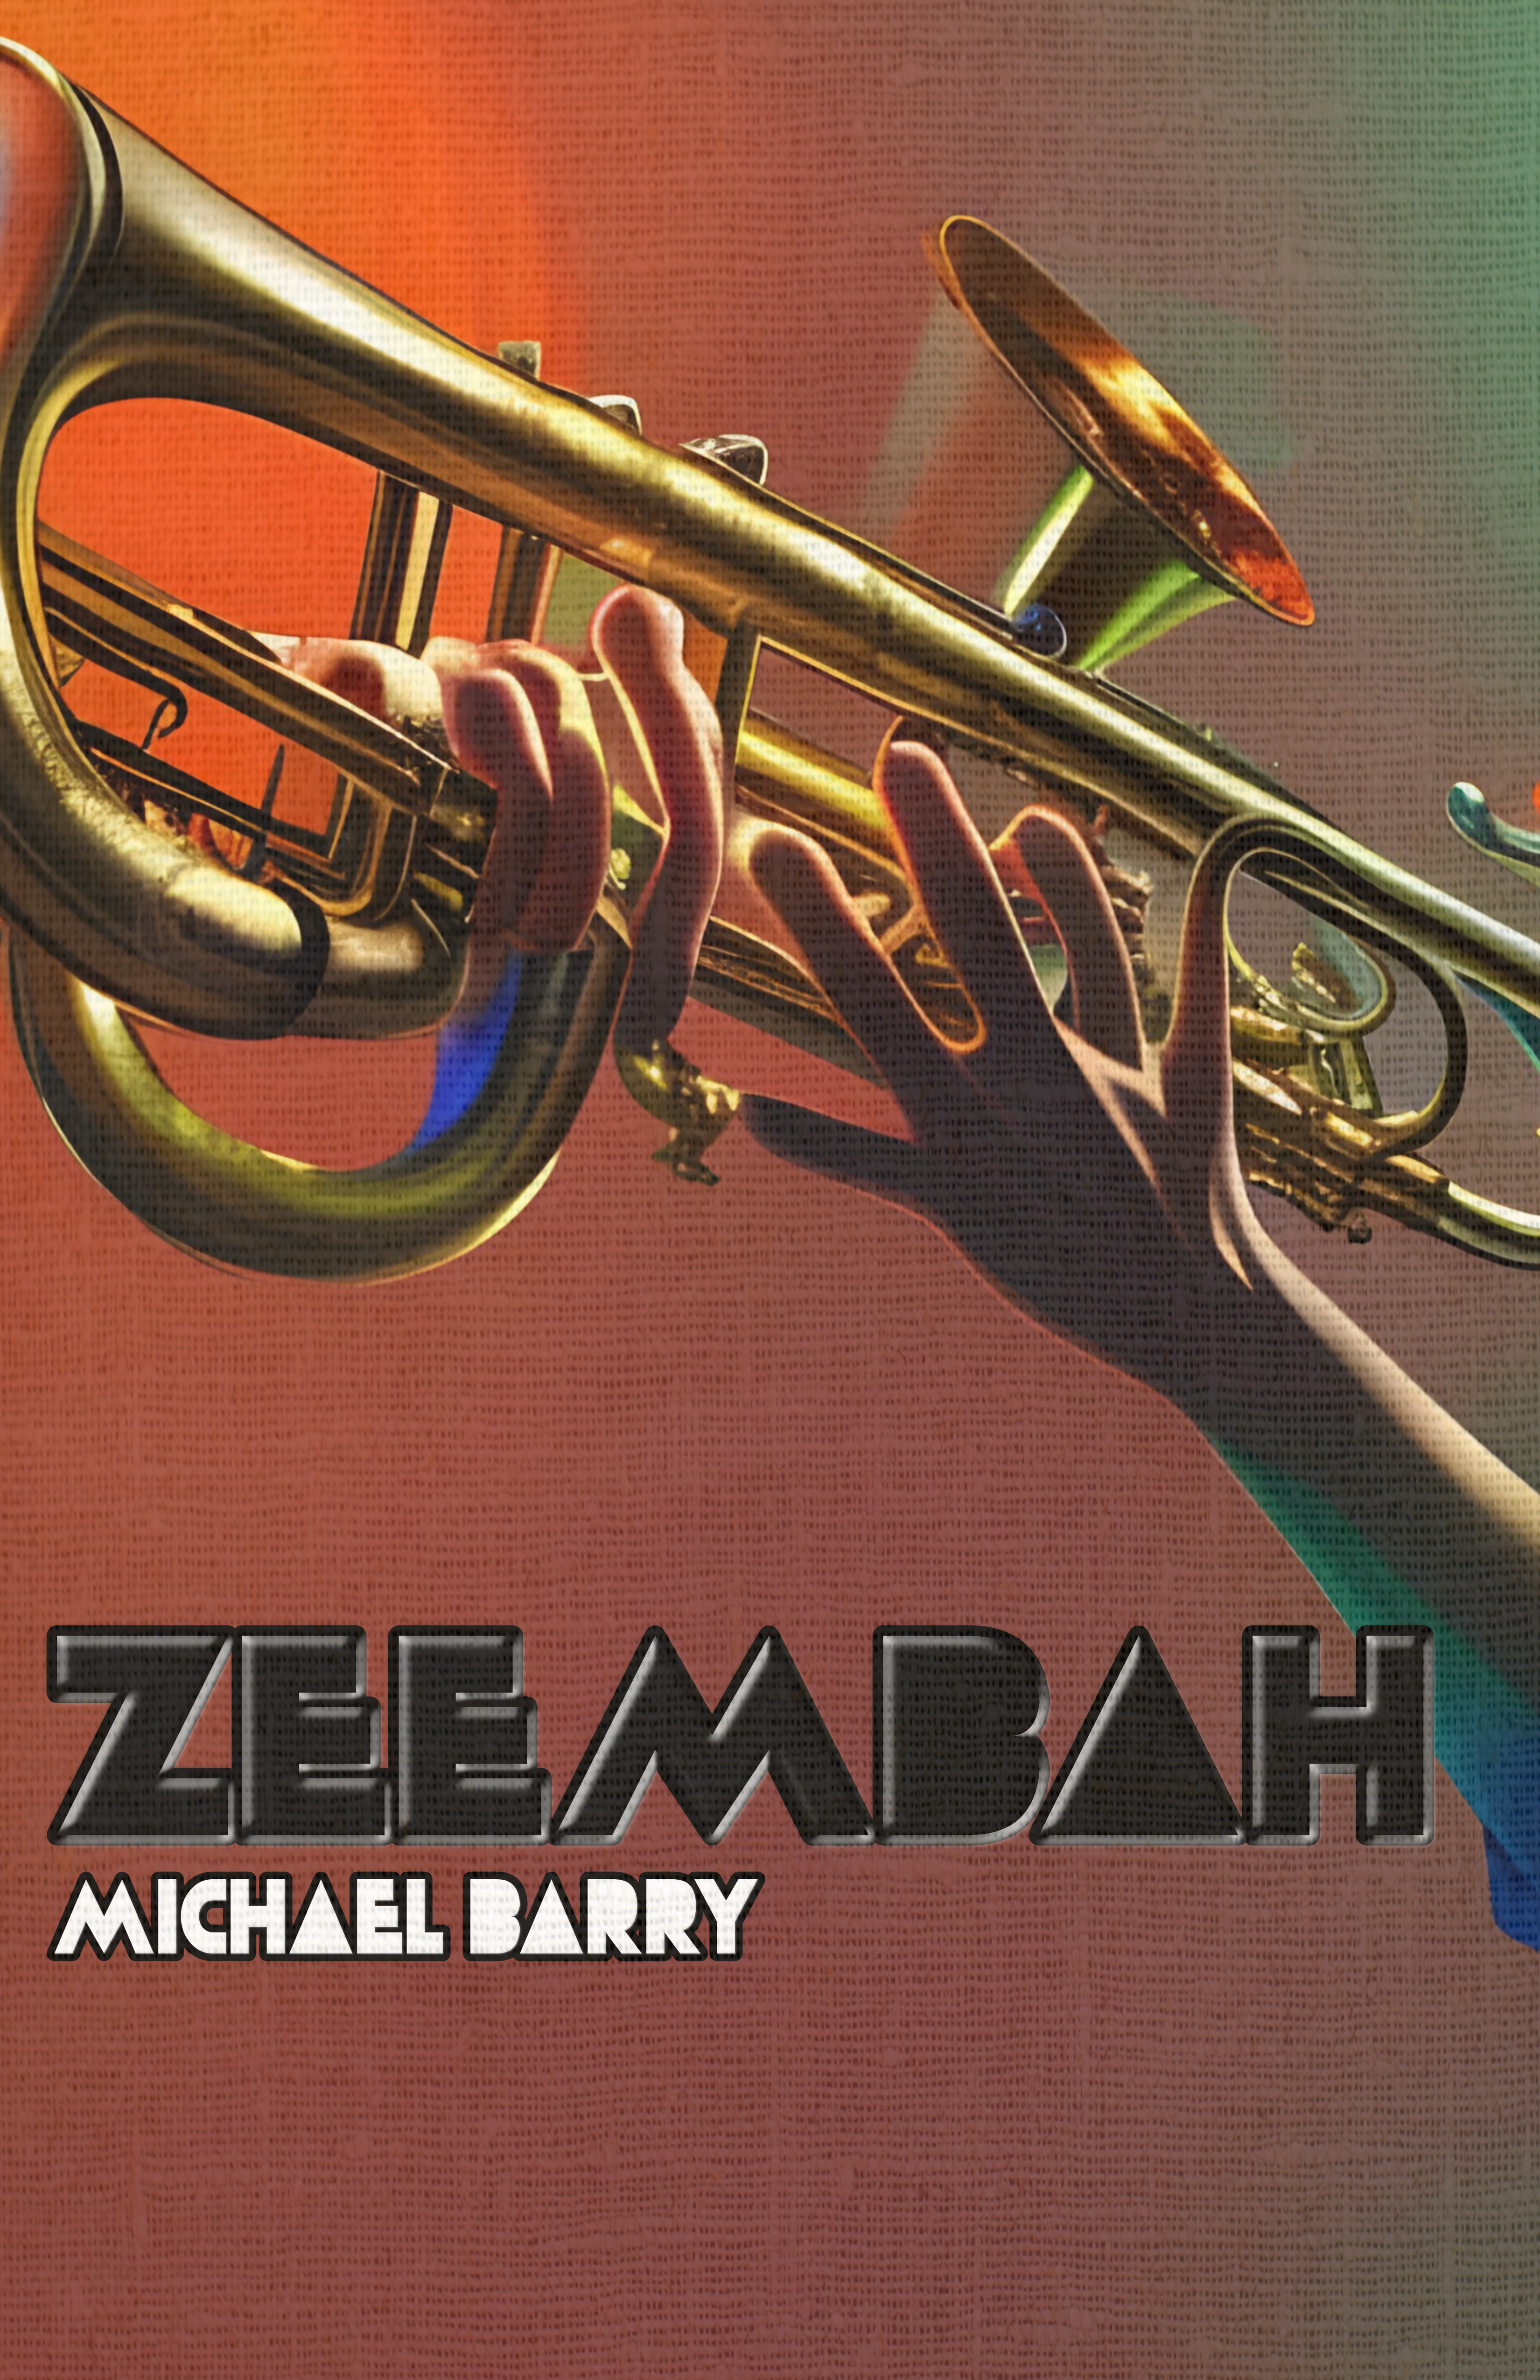 Zeembah (Score Only) by Michael Barry